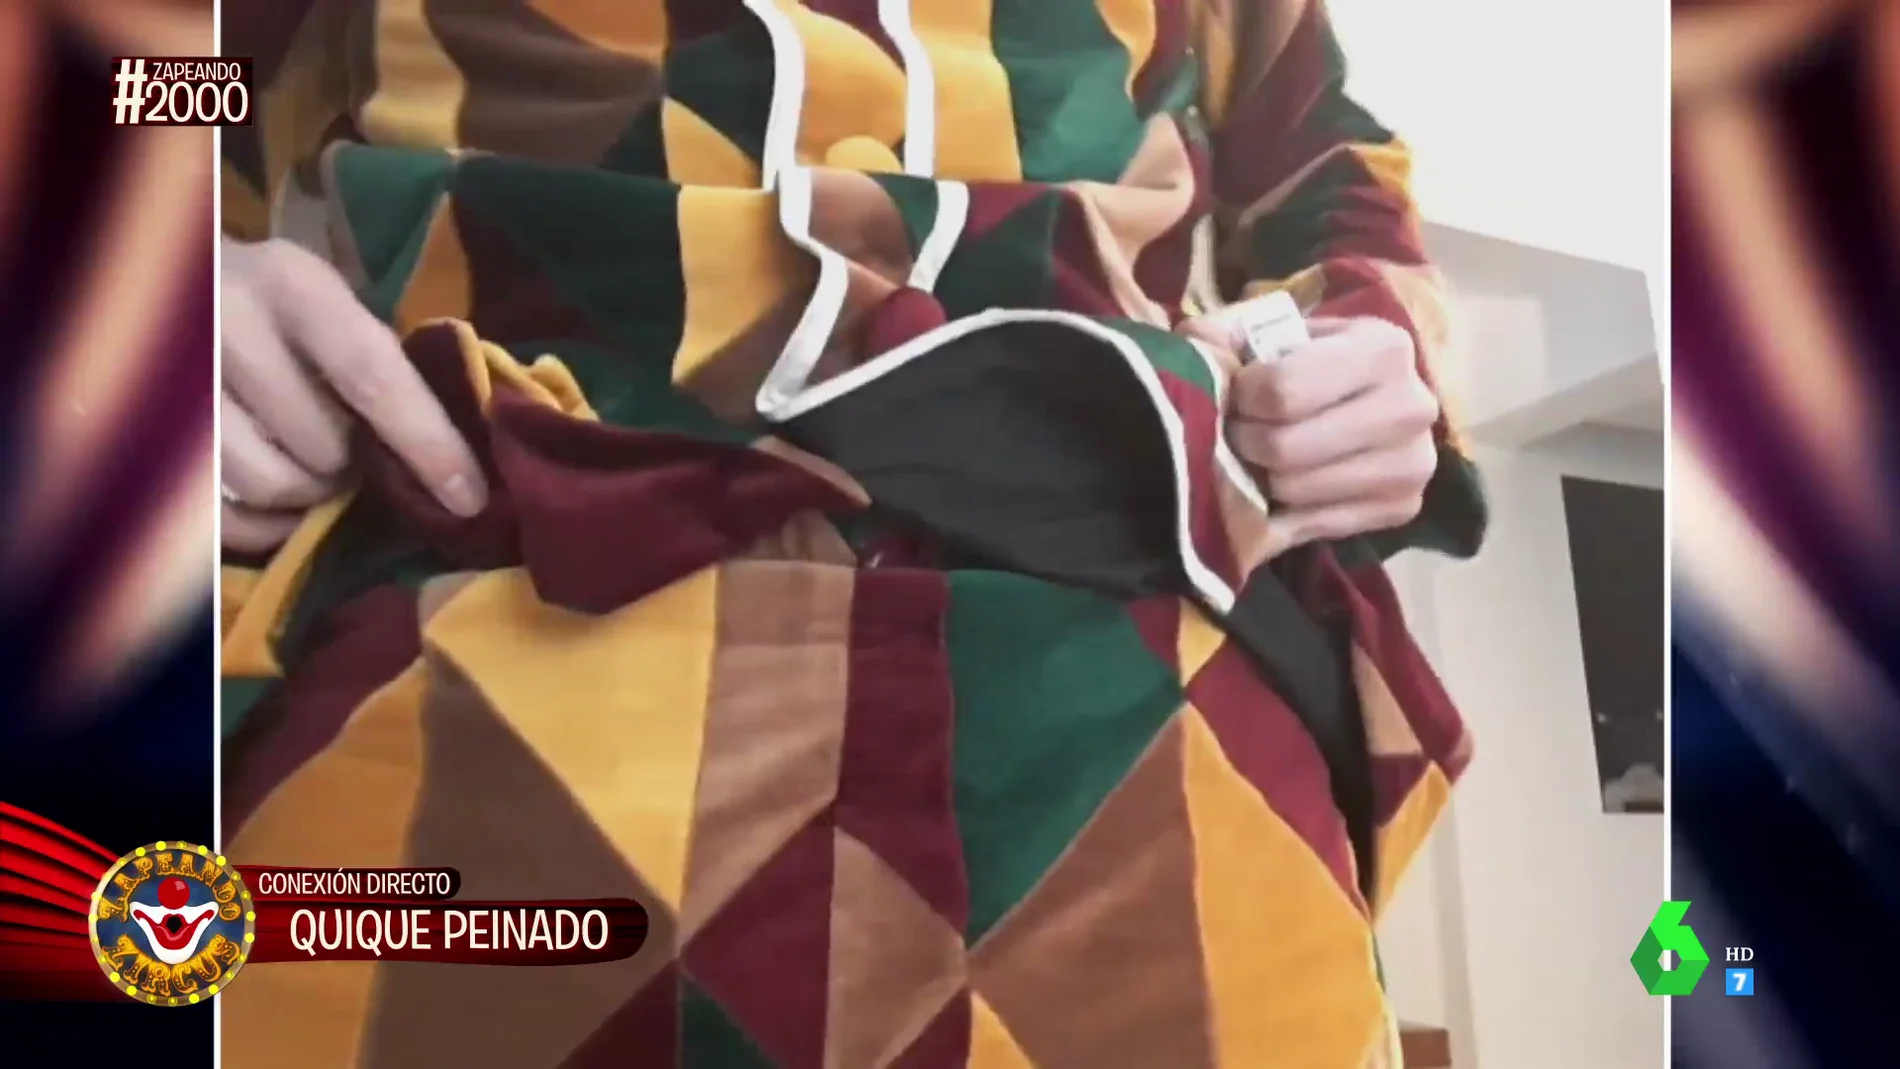 "¿Por qué nos enseñas esa parte?": el susto de Cristina Pedroche cuando Quique Peinado enseña su disfraz en plena videollamada